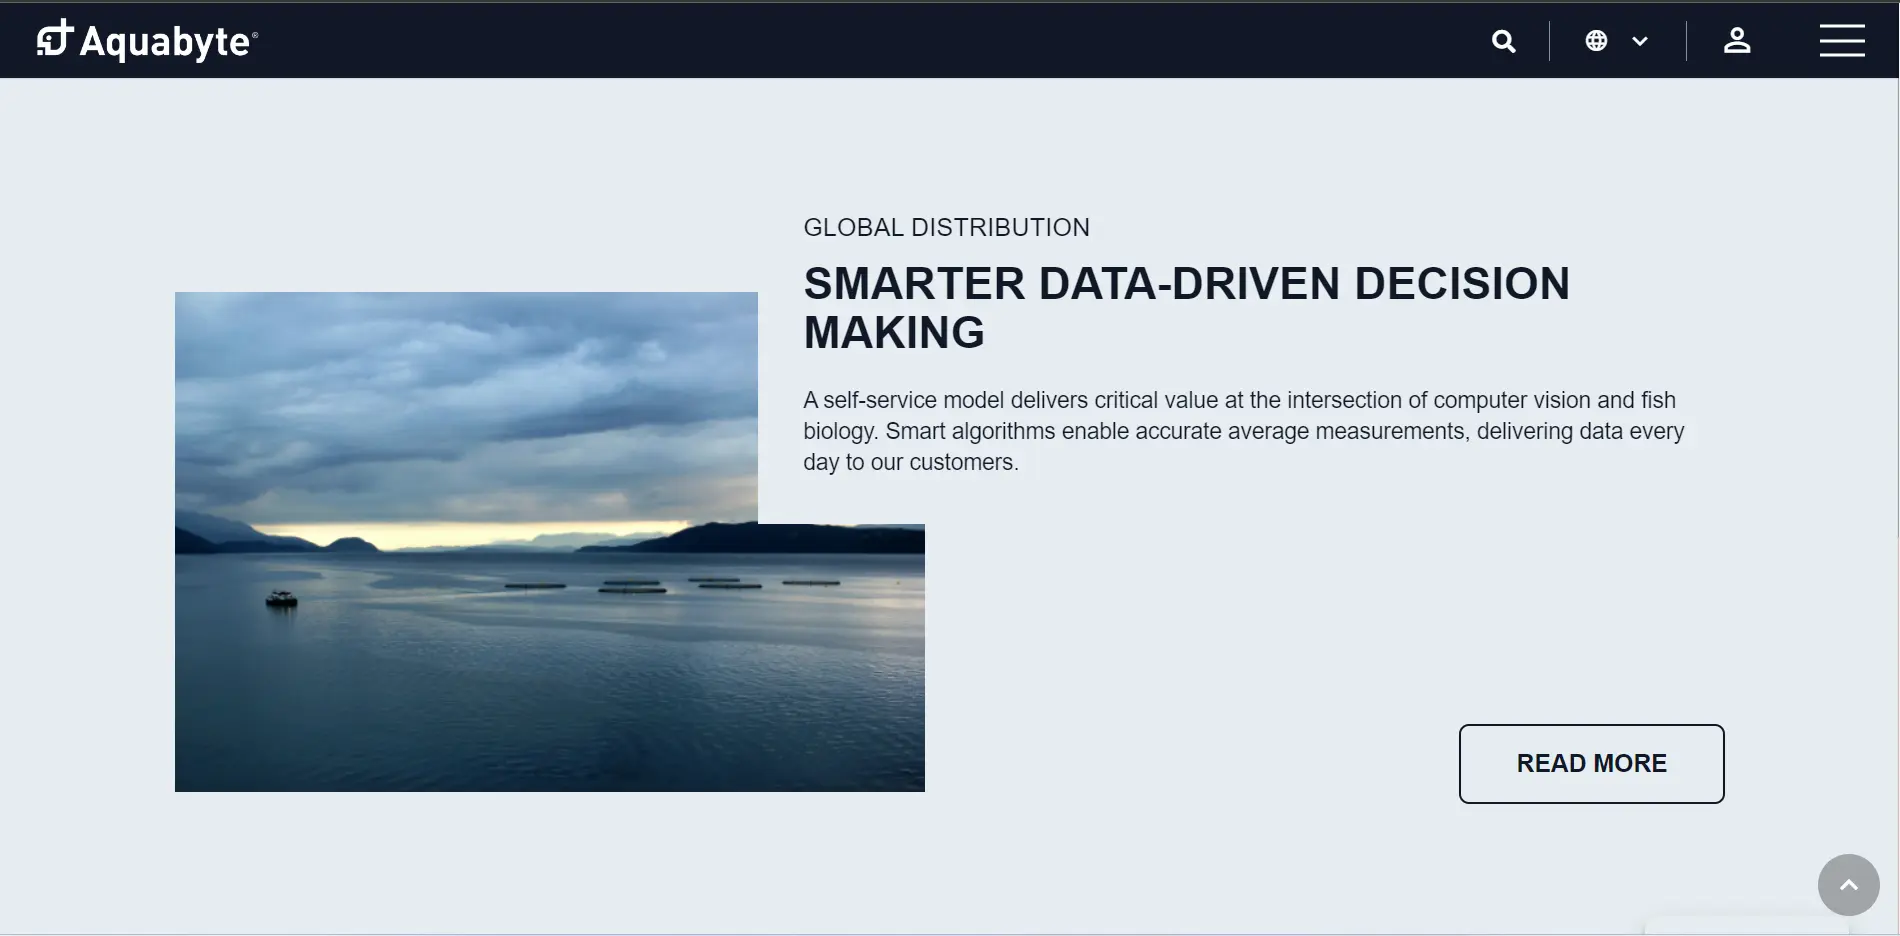 Aquabytes Smart data-driven fish monitoring system